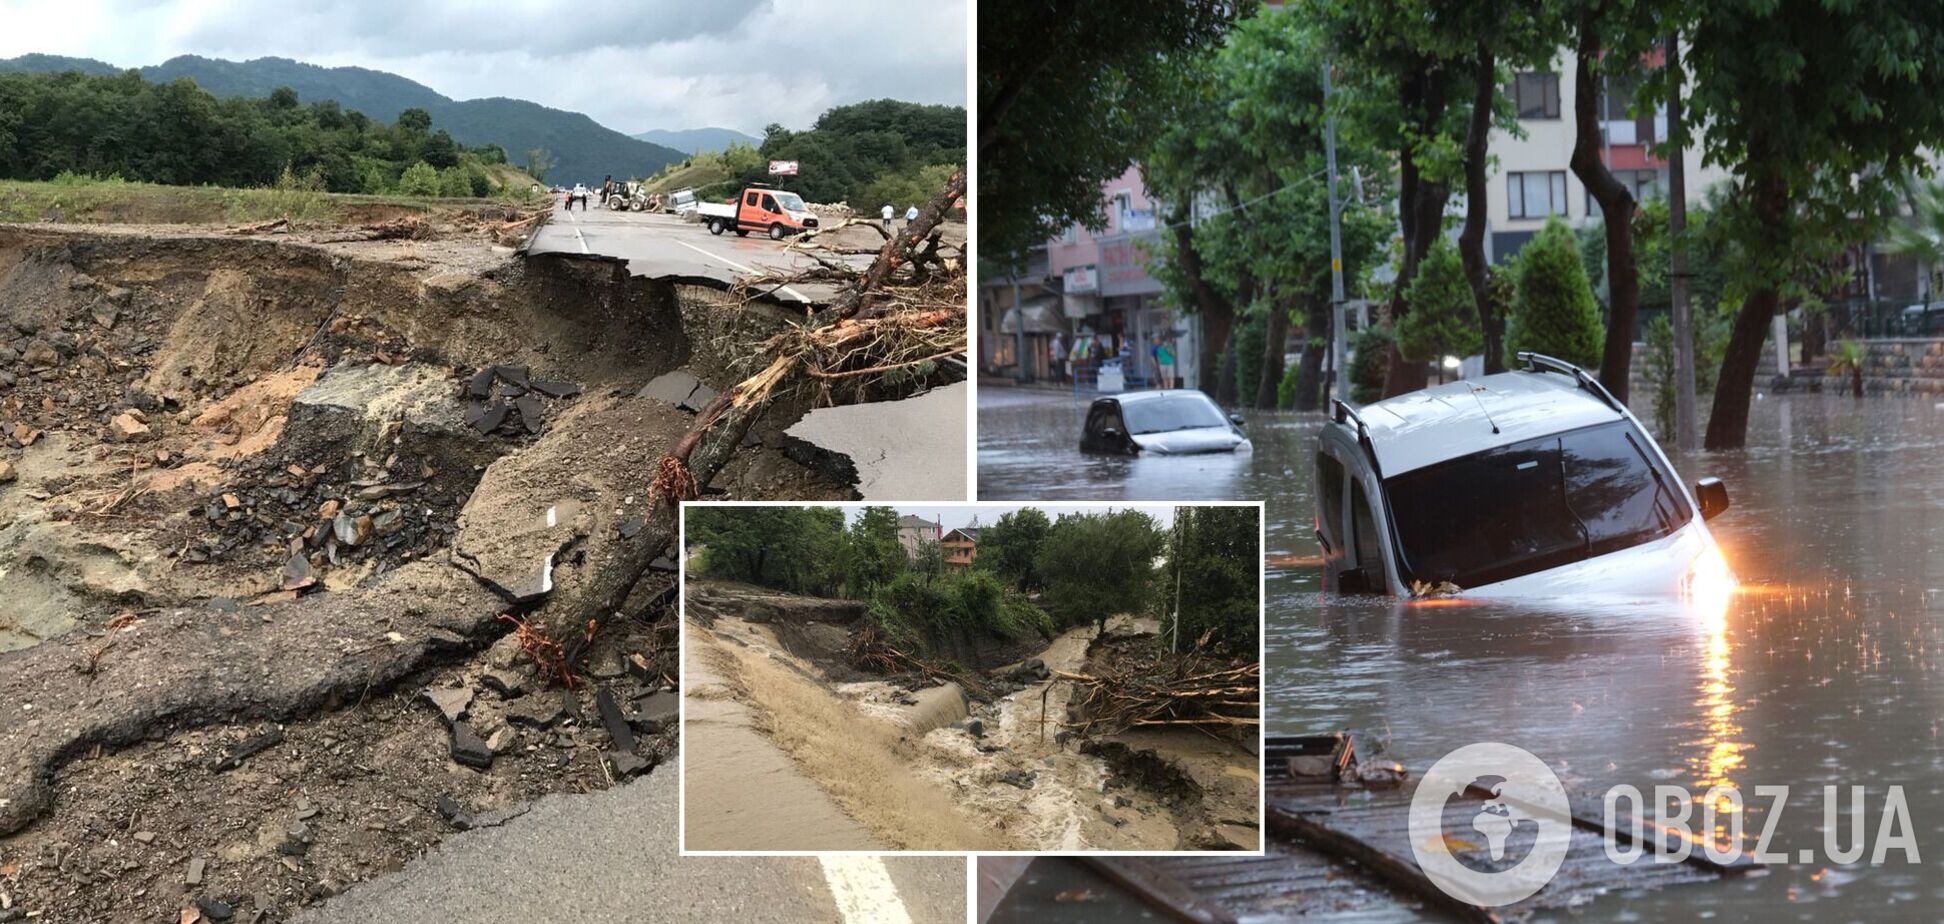 Турцию из-за мощных ливней охватили наводнения и оползни: есть погибшие и много раненых. Фото и видео